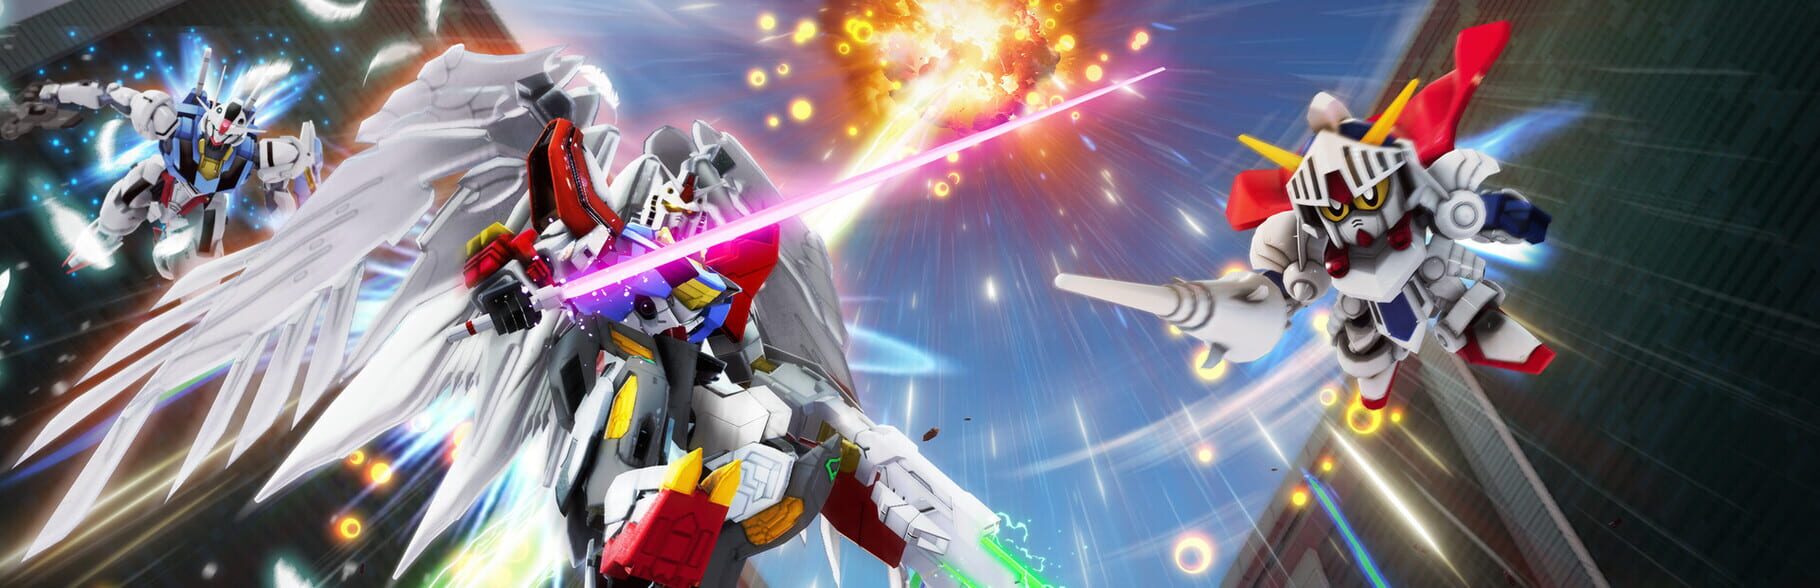 Artwork for Gundam Breaker 4